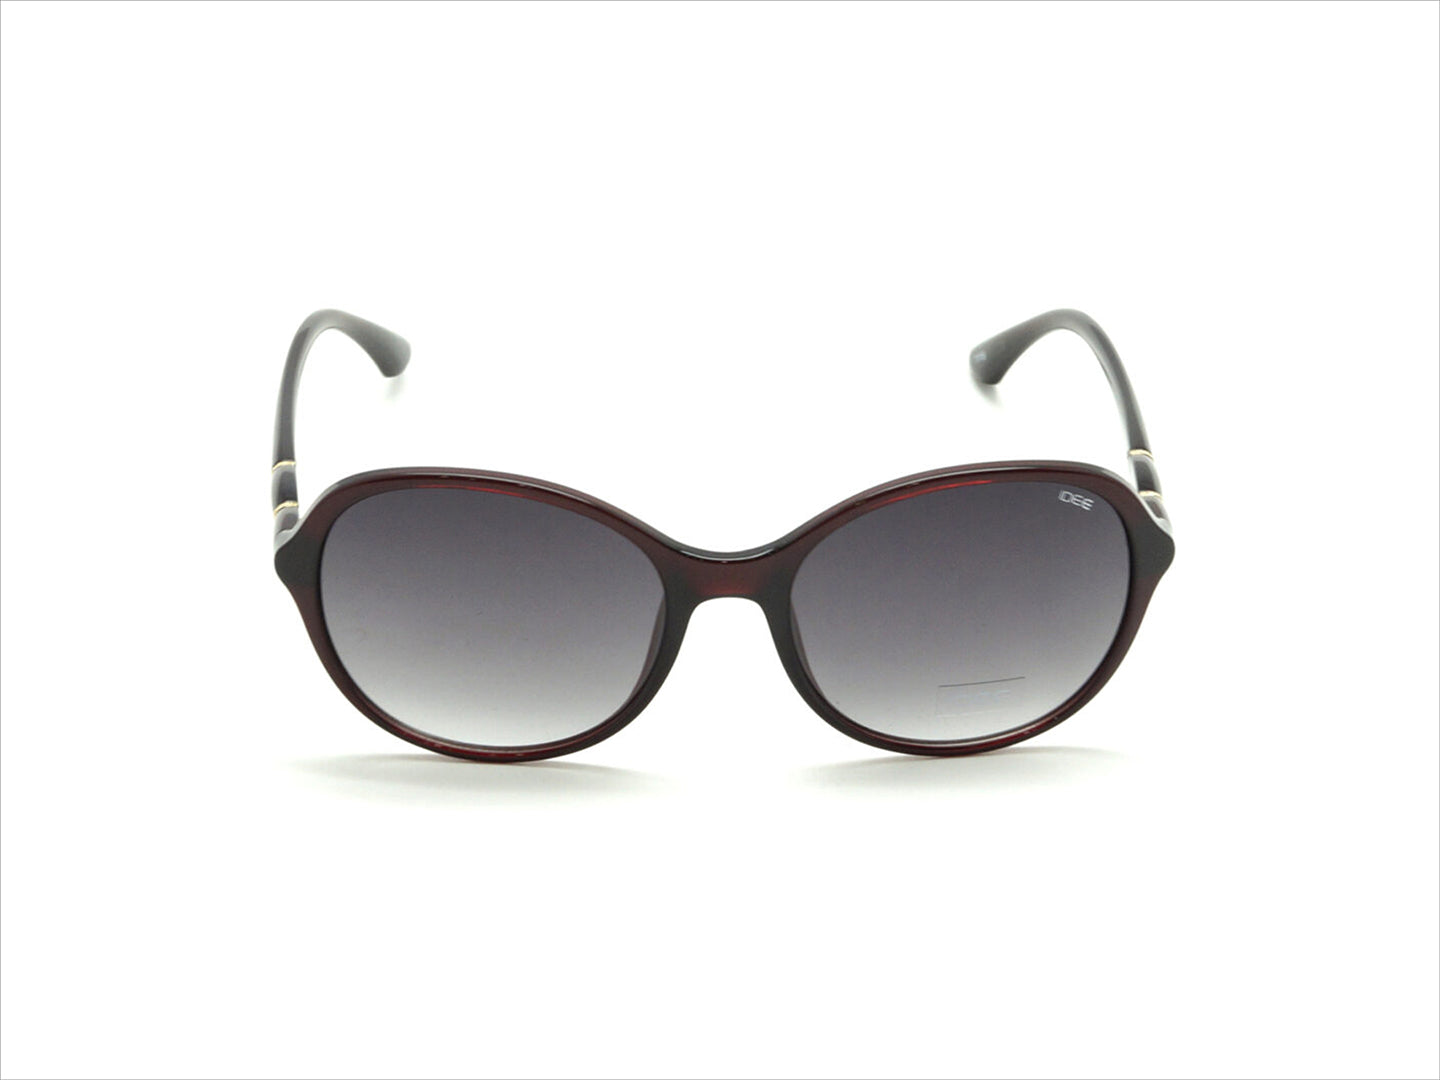 IDEE Sunglasses IDEE-S2631-C3 56mm Large Oval Black Sunglasses